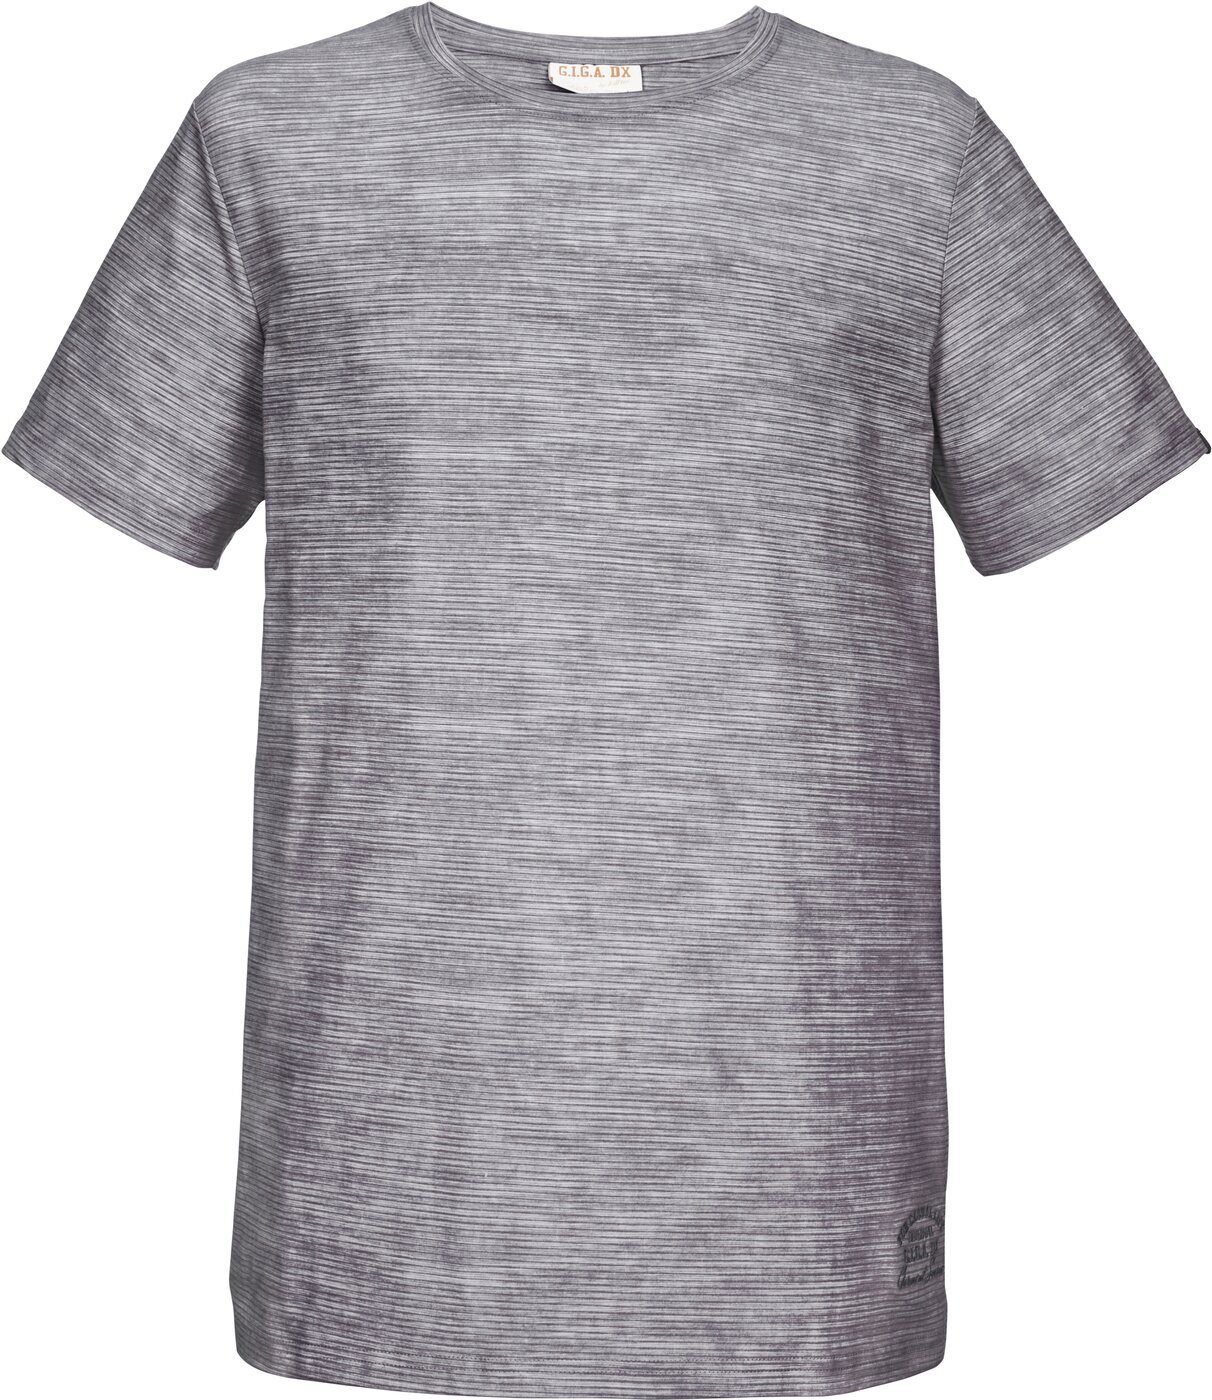 DX DX T-Shirt Optik Melange G.I.G.A. T-Shirt G.I.G.A. in Herren gestreifter